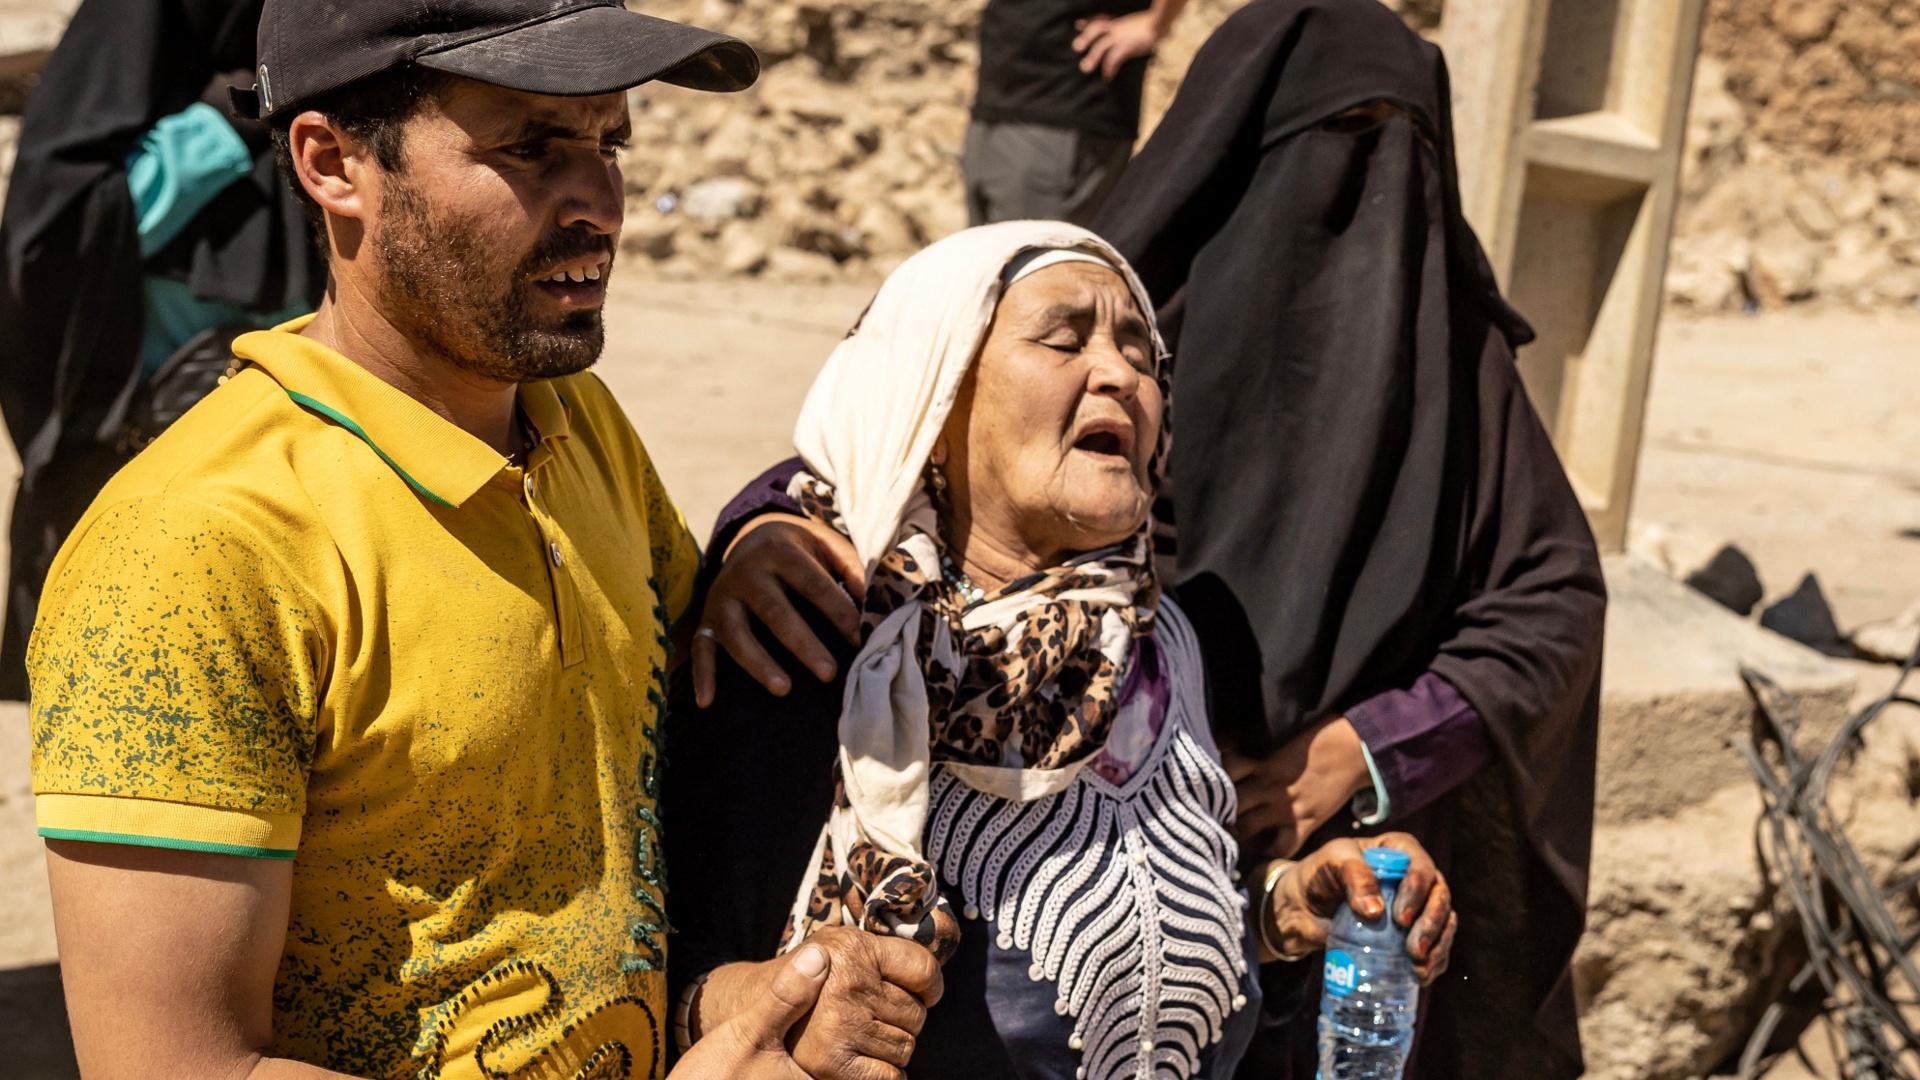 Жители Марокко спят на улицах после землетрясения, жертв уже больше 2800